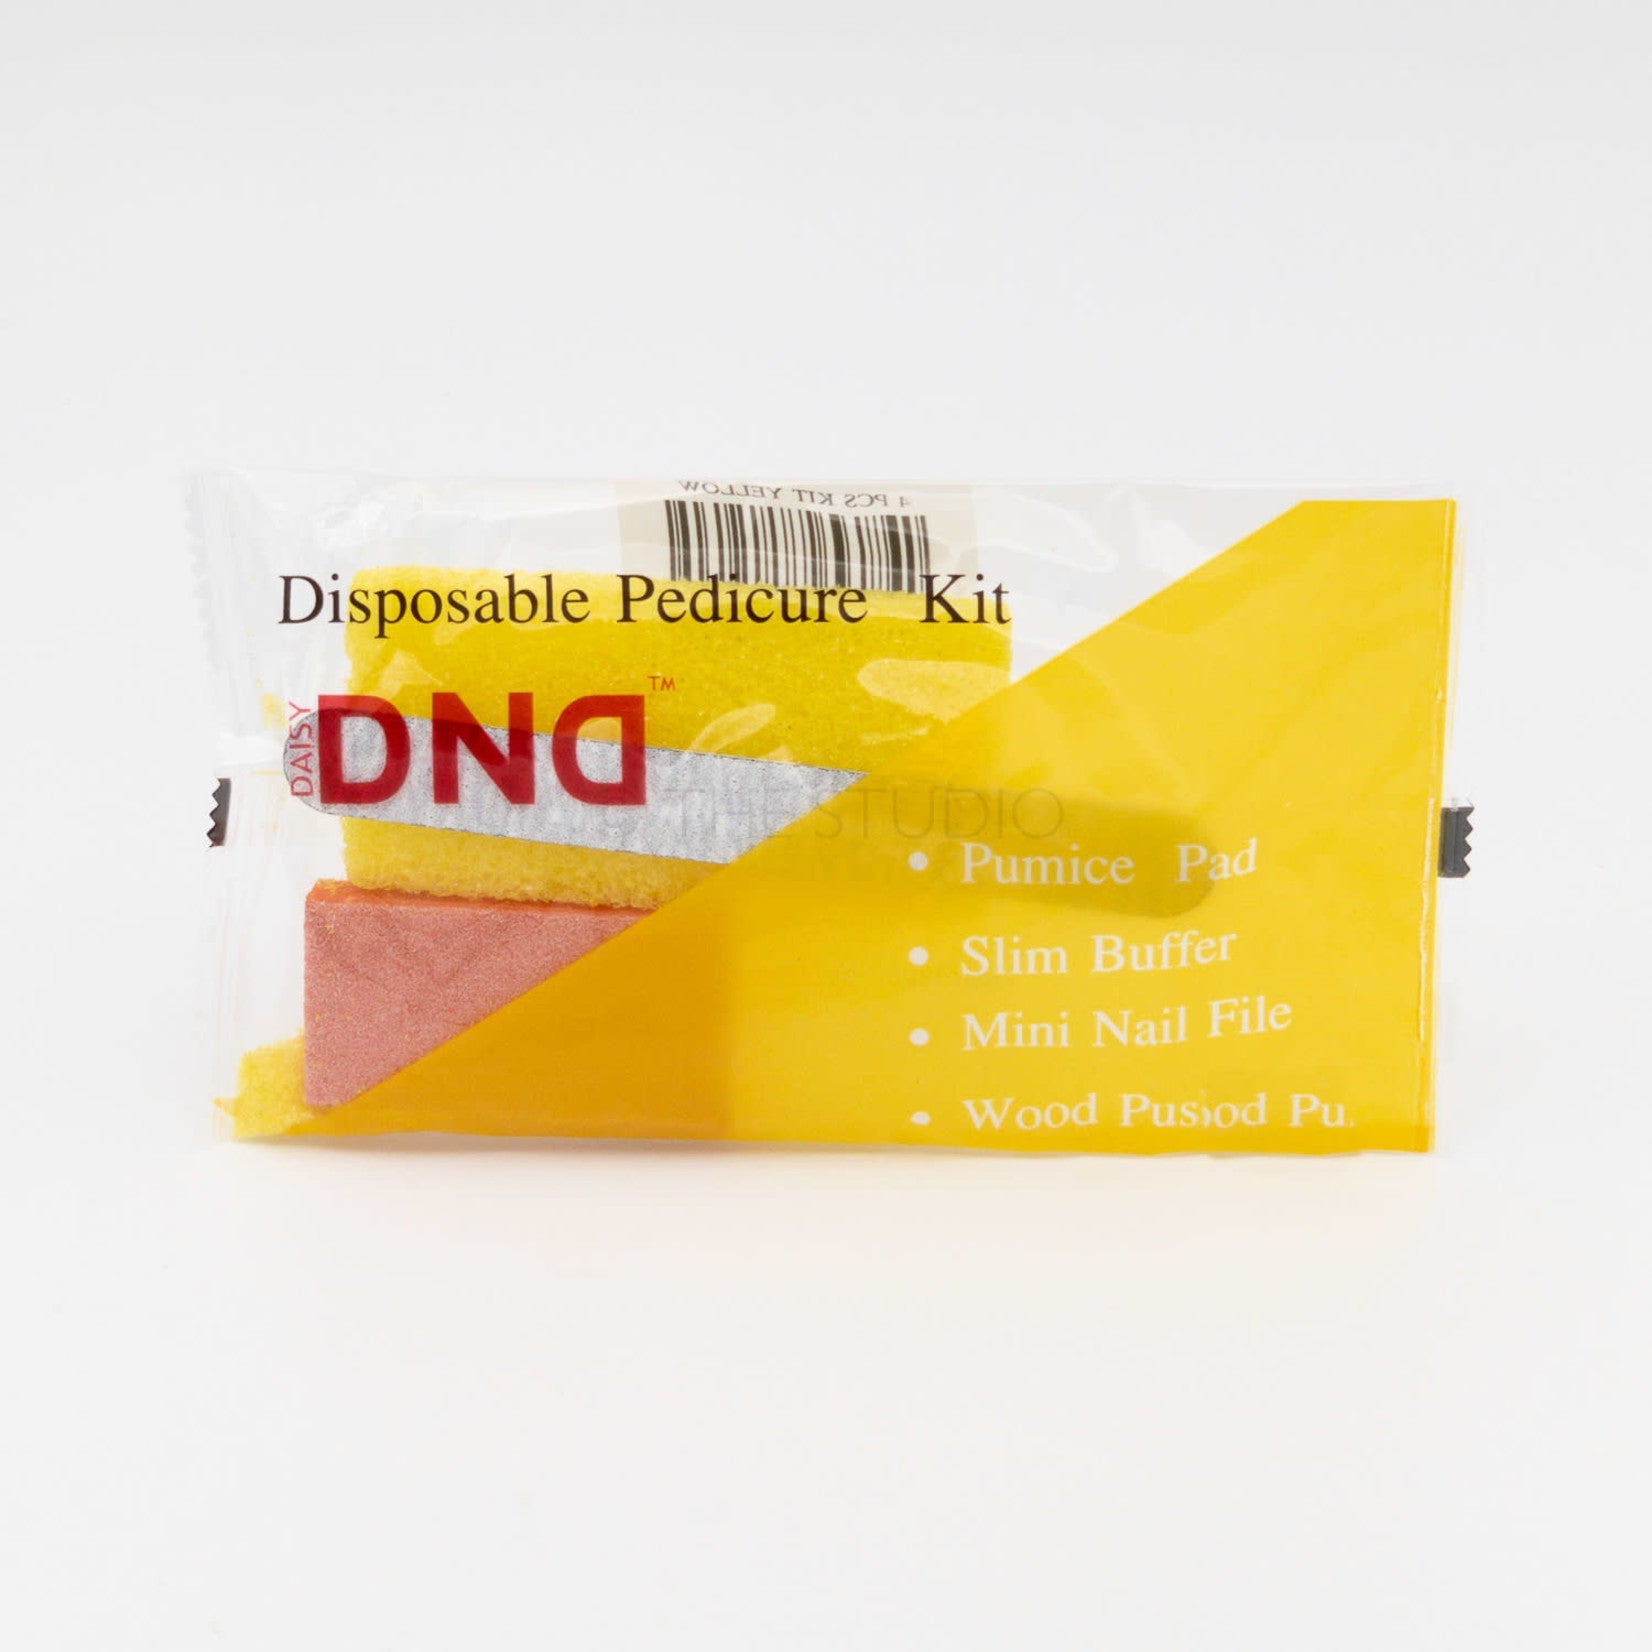 DND - Disposable Pedicure Kit